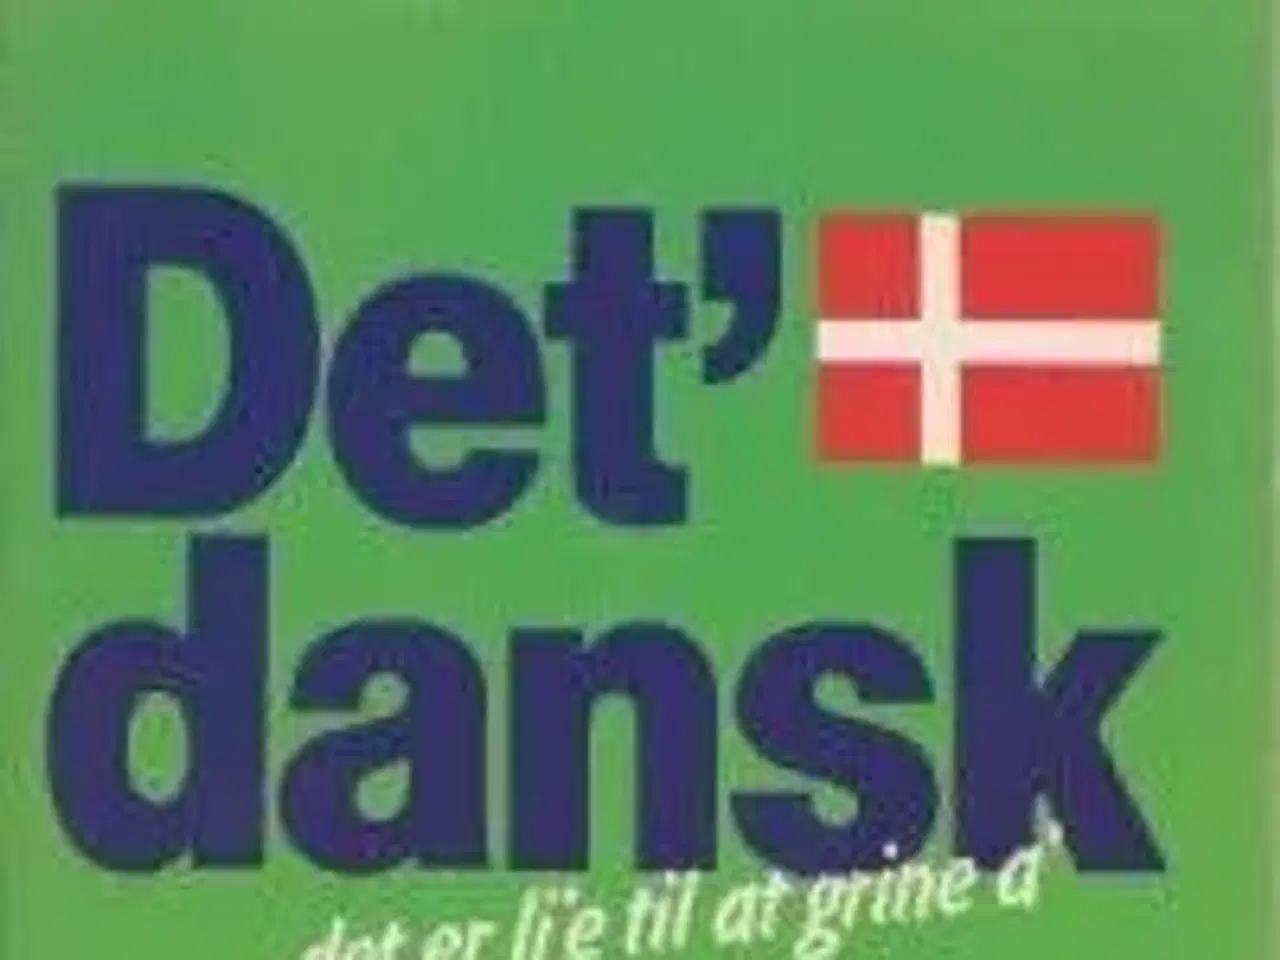 Billede 1 - Det' dansk.. det er li'e til at grine a'